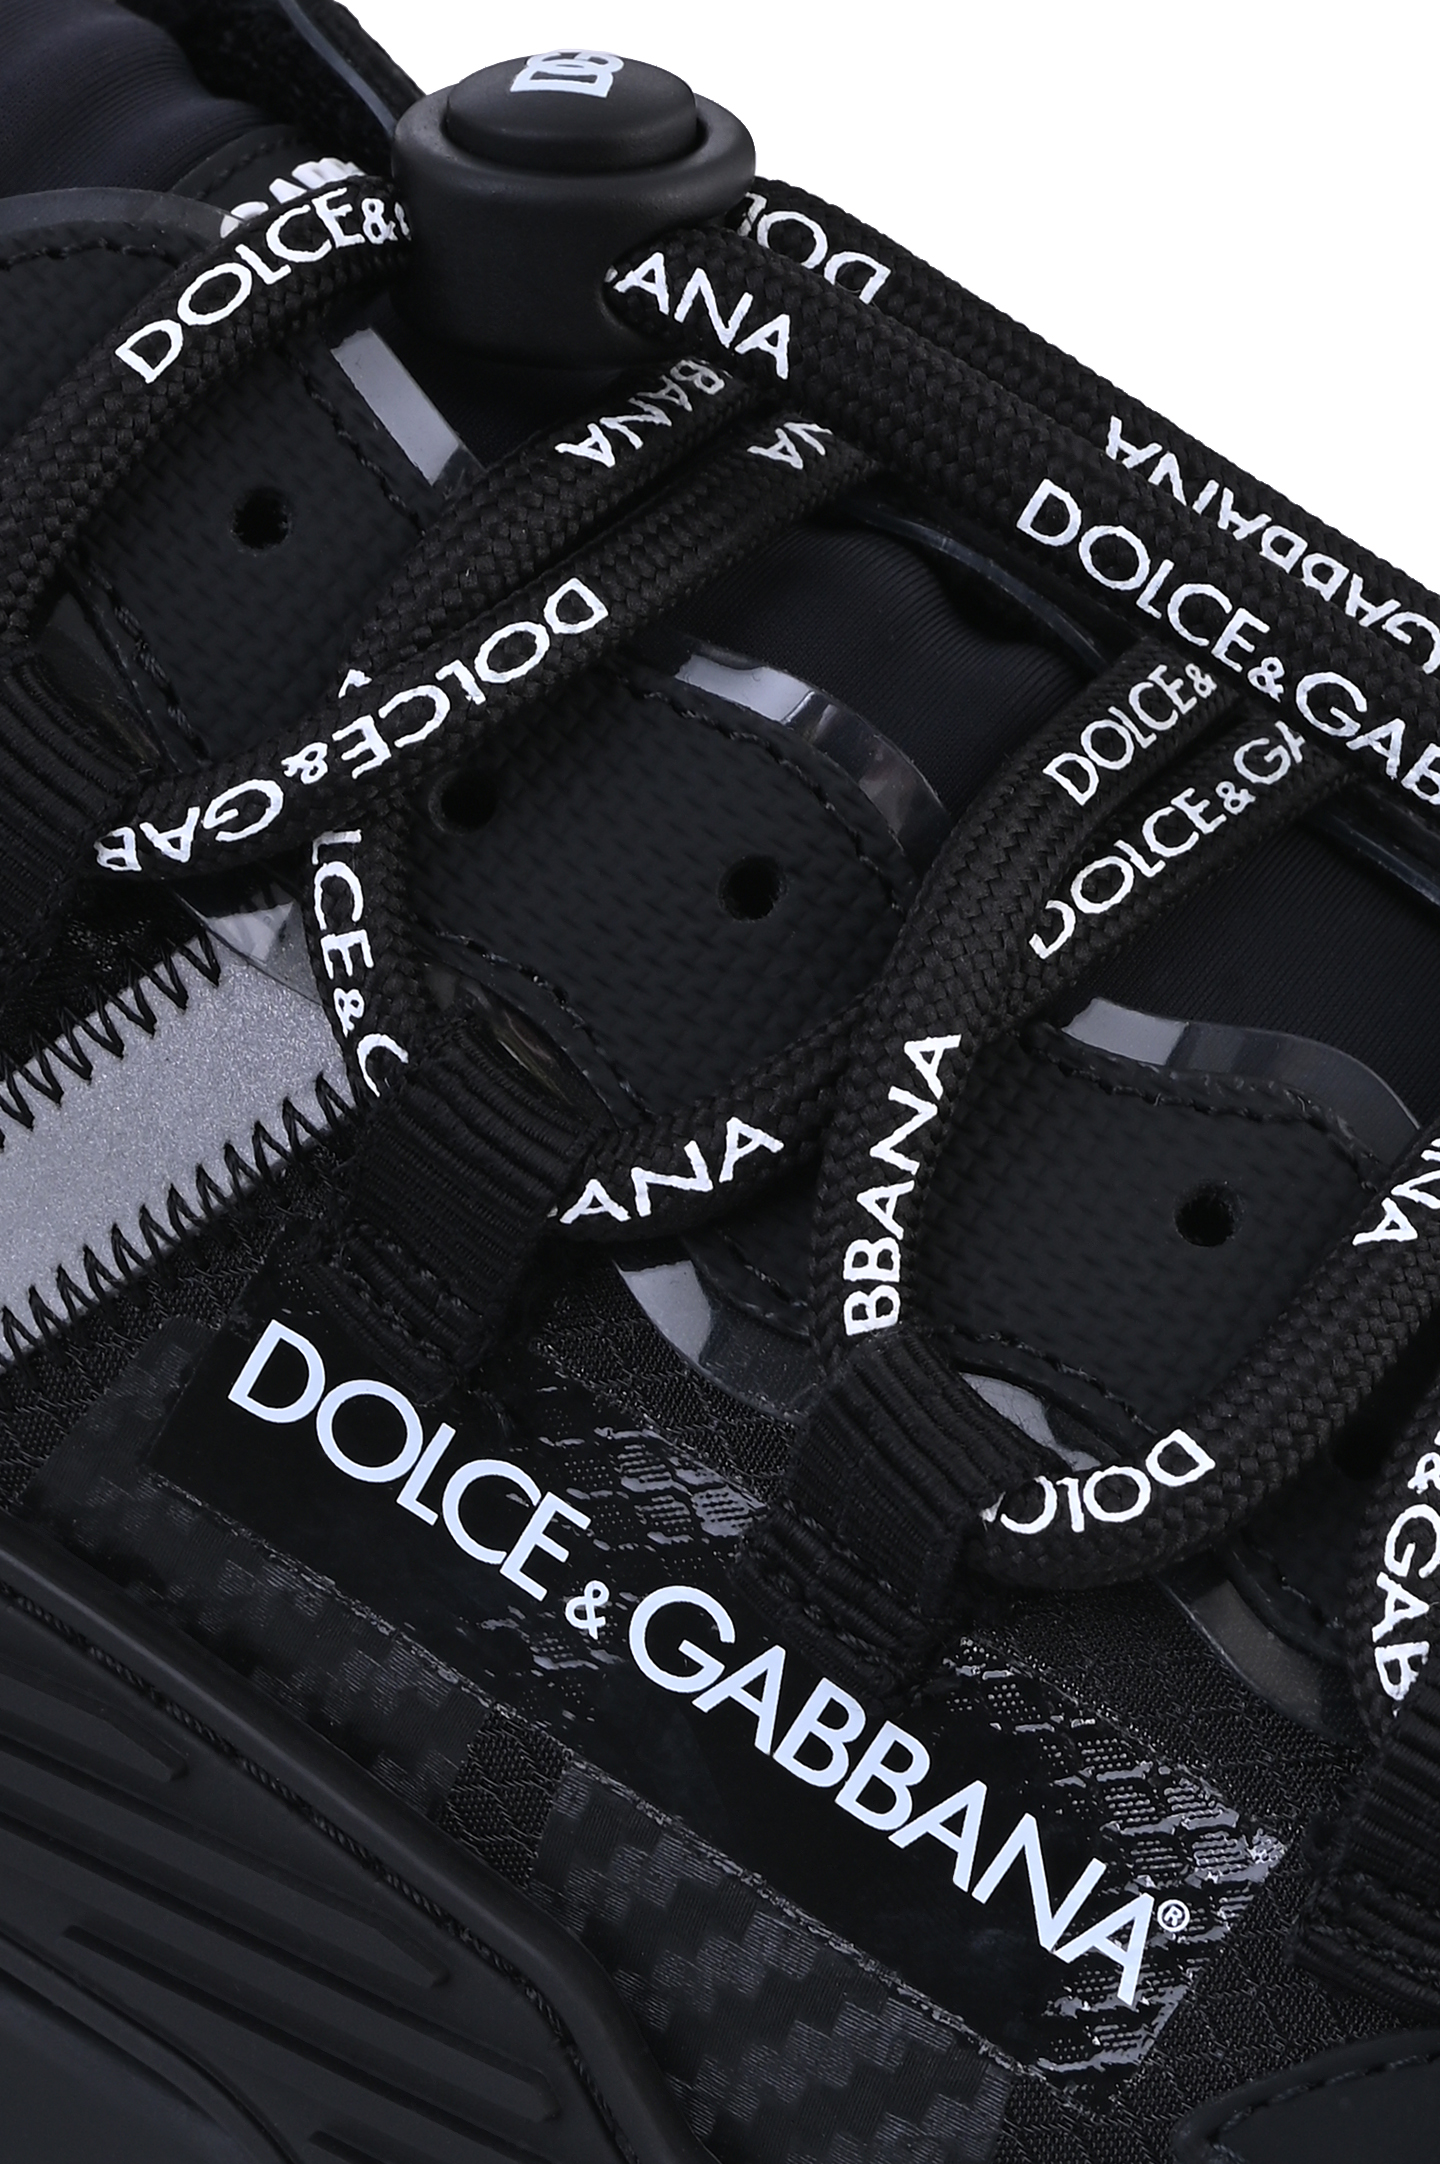 Кроссовки DOLCE & GABBANA CS1770 AJ969, цвет: Черный, Мужской